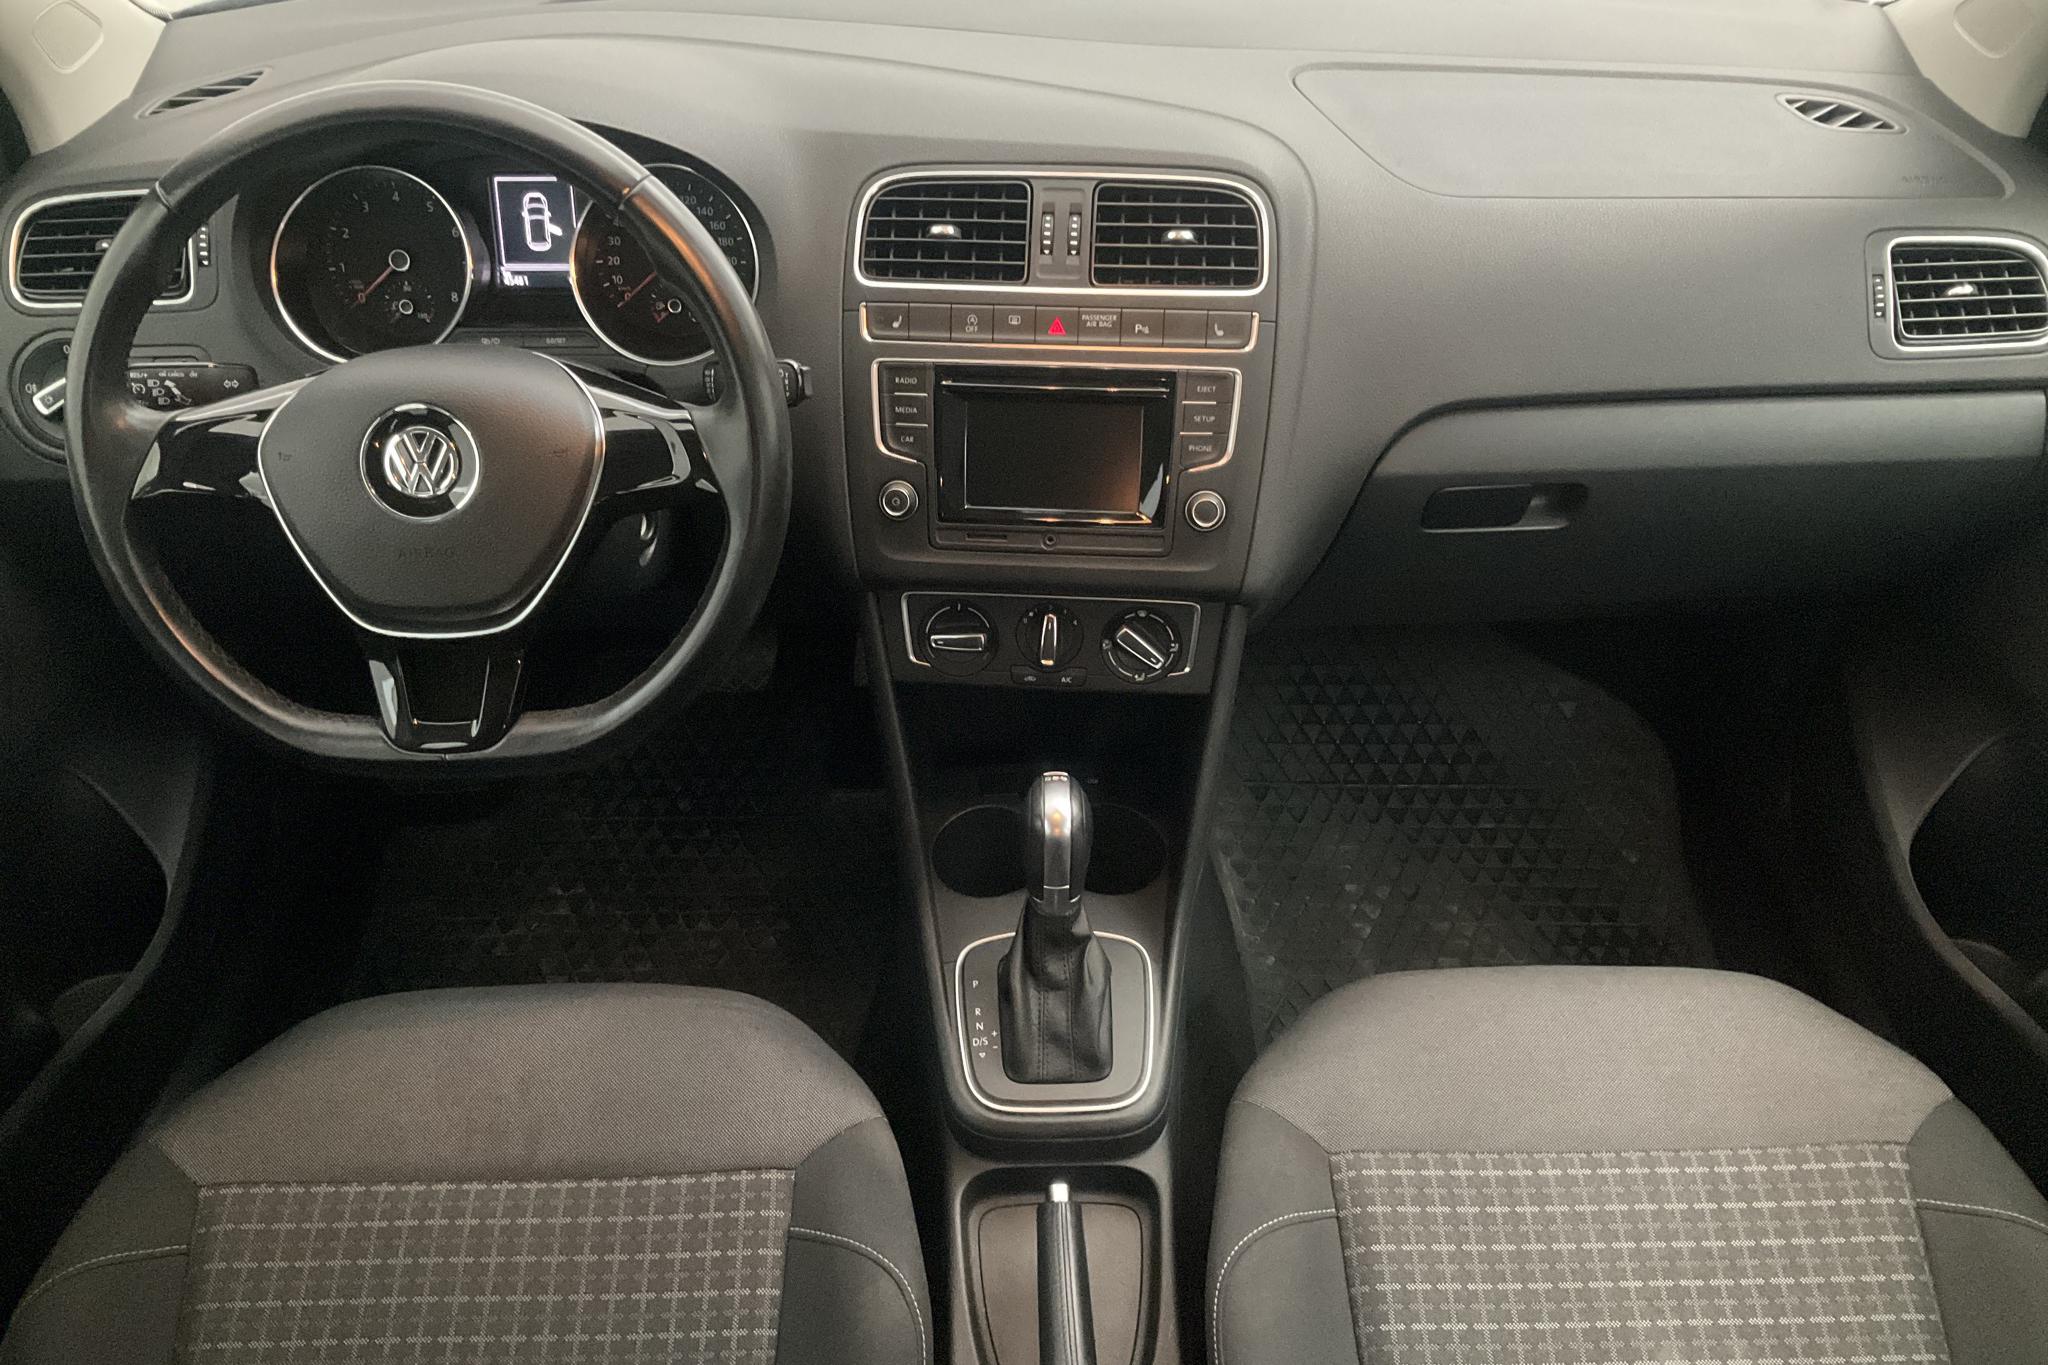 VW Polo 1.2 TSI 5dr (90hk) - 45 490 km - Automatic - black - 2016